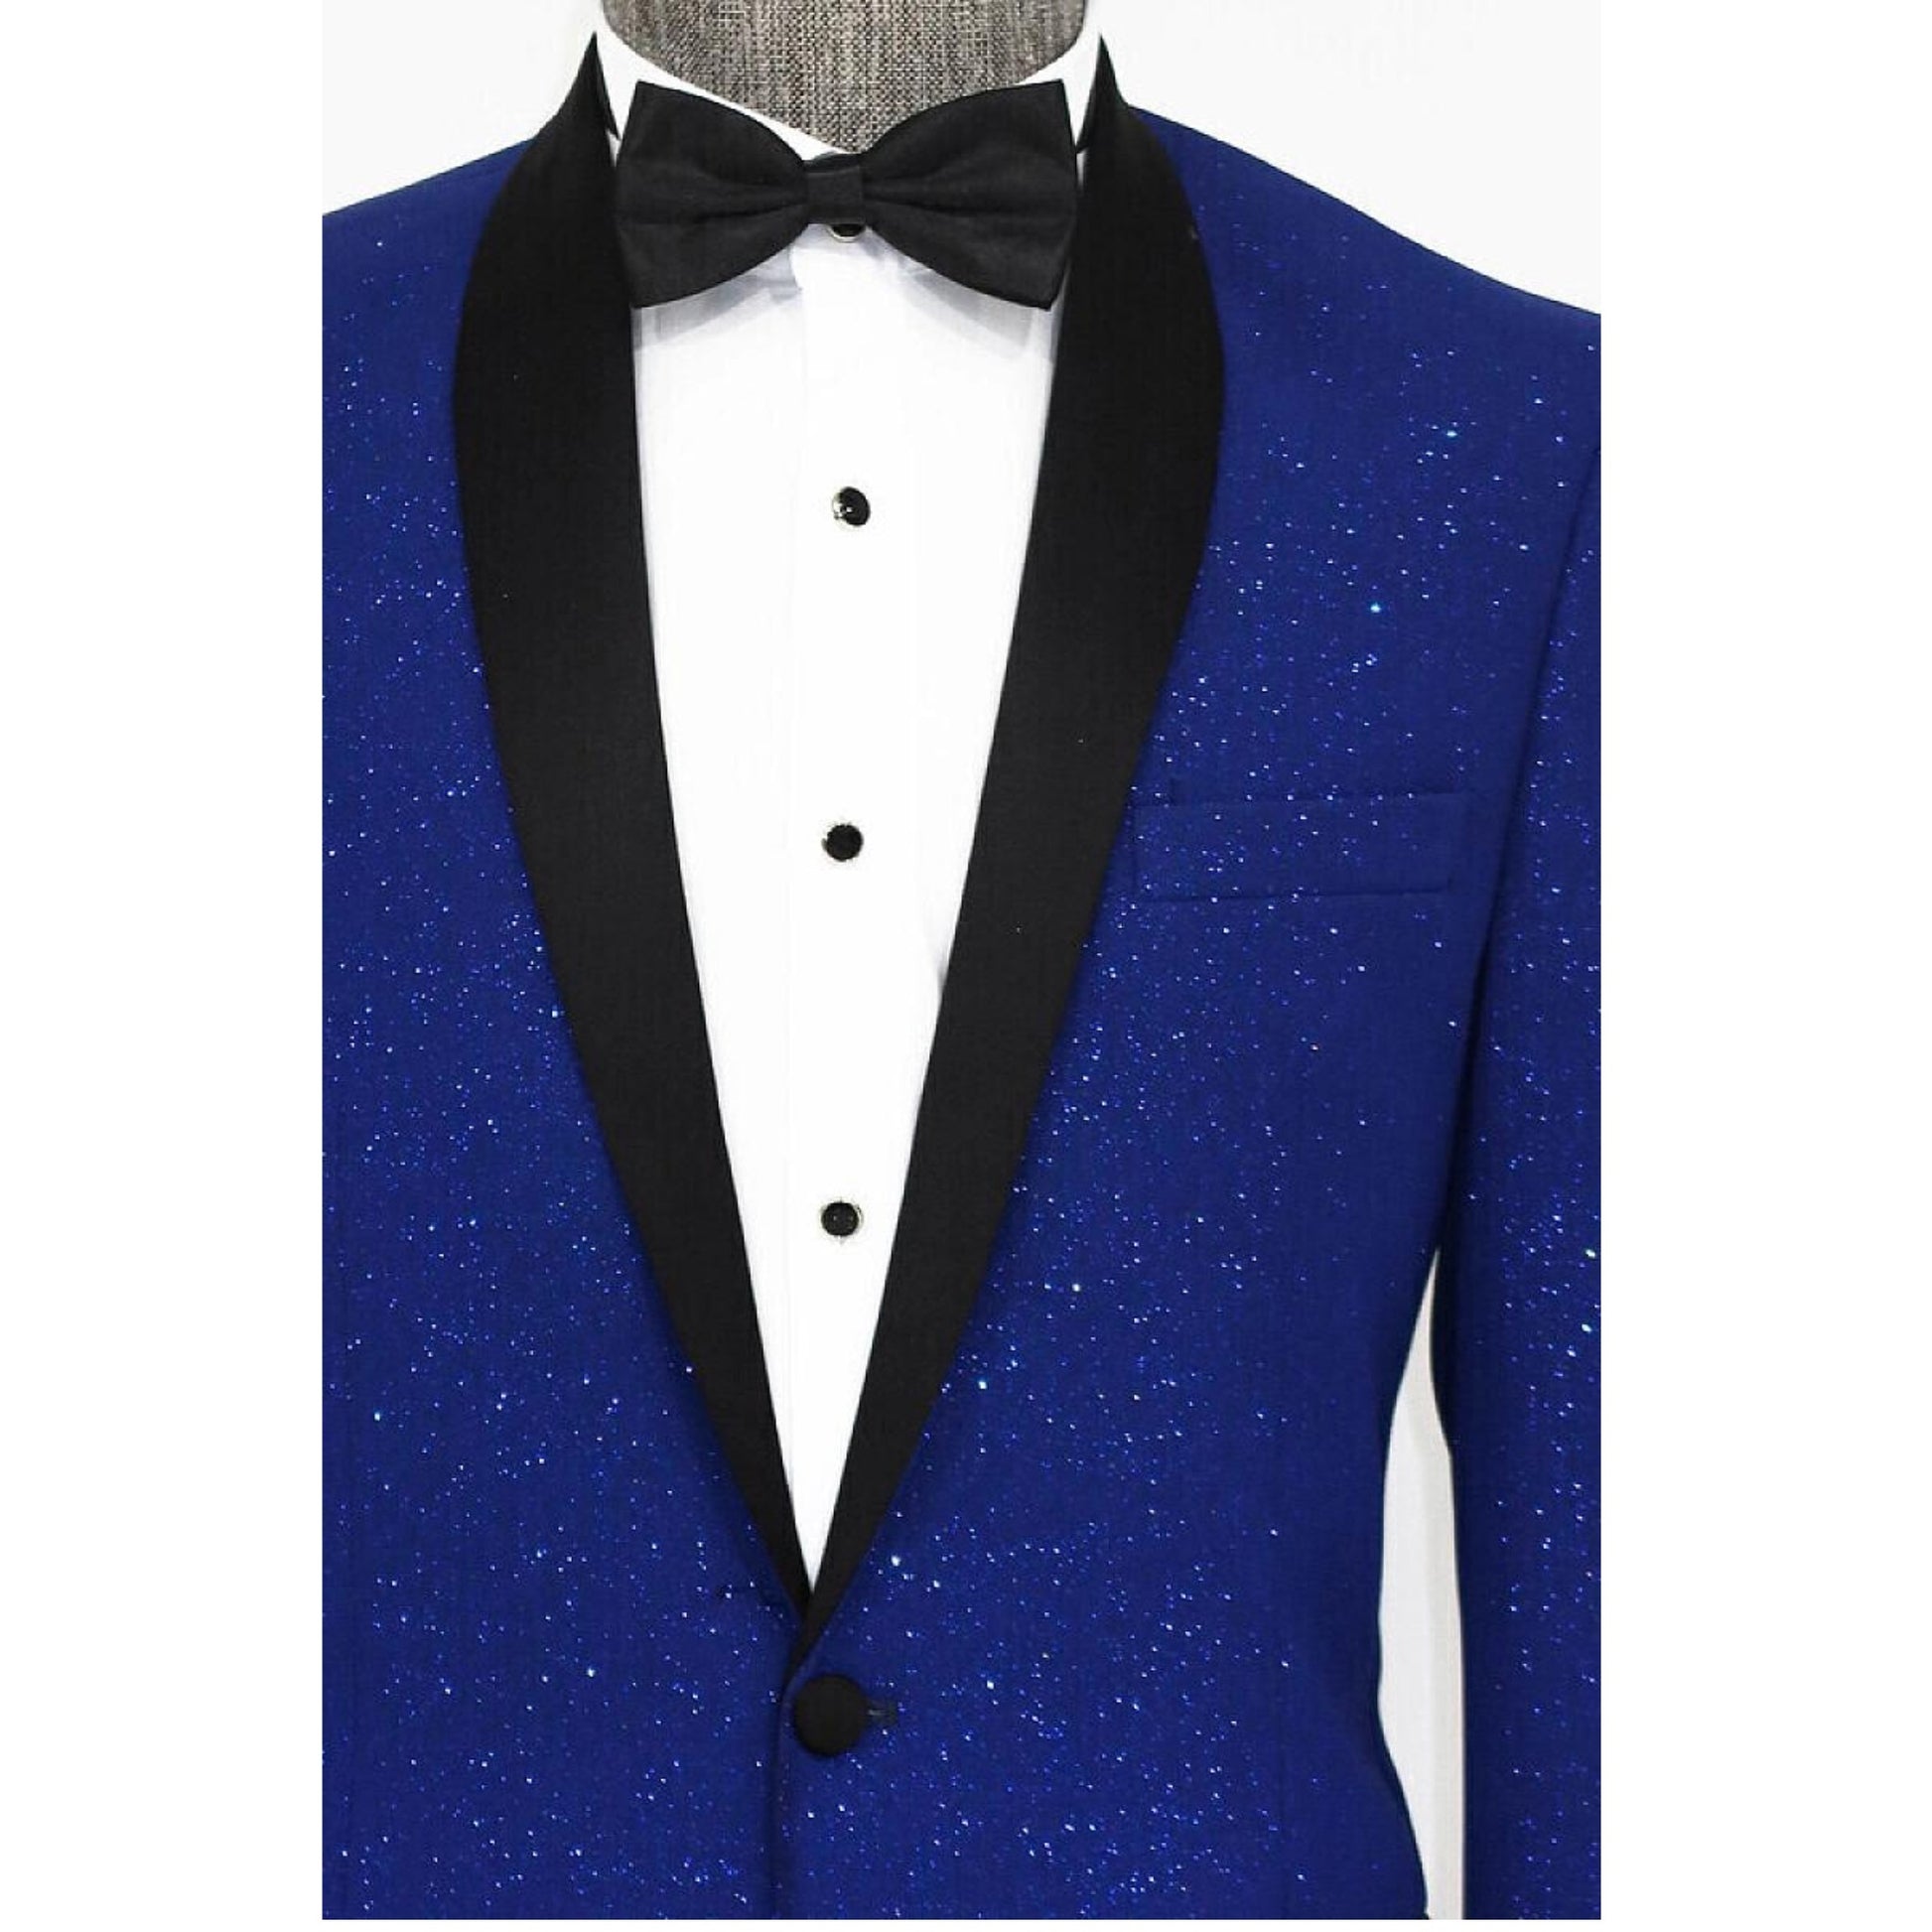 Man in KCT Menswear's royal blue sparkle tuxedo jacket exuding elegance at formal events.